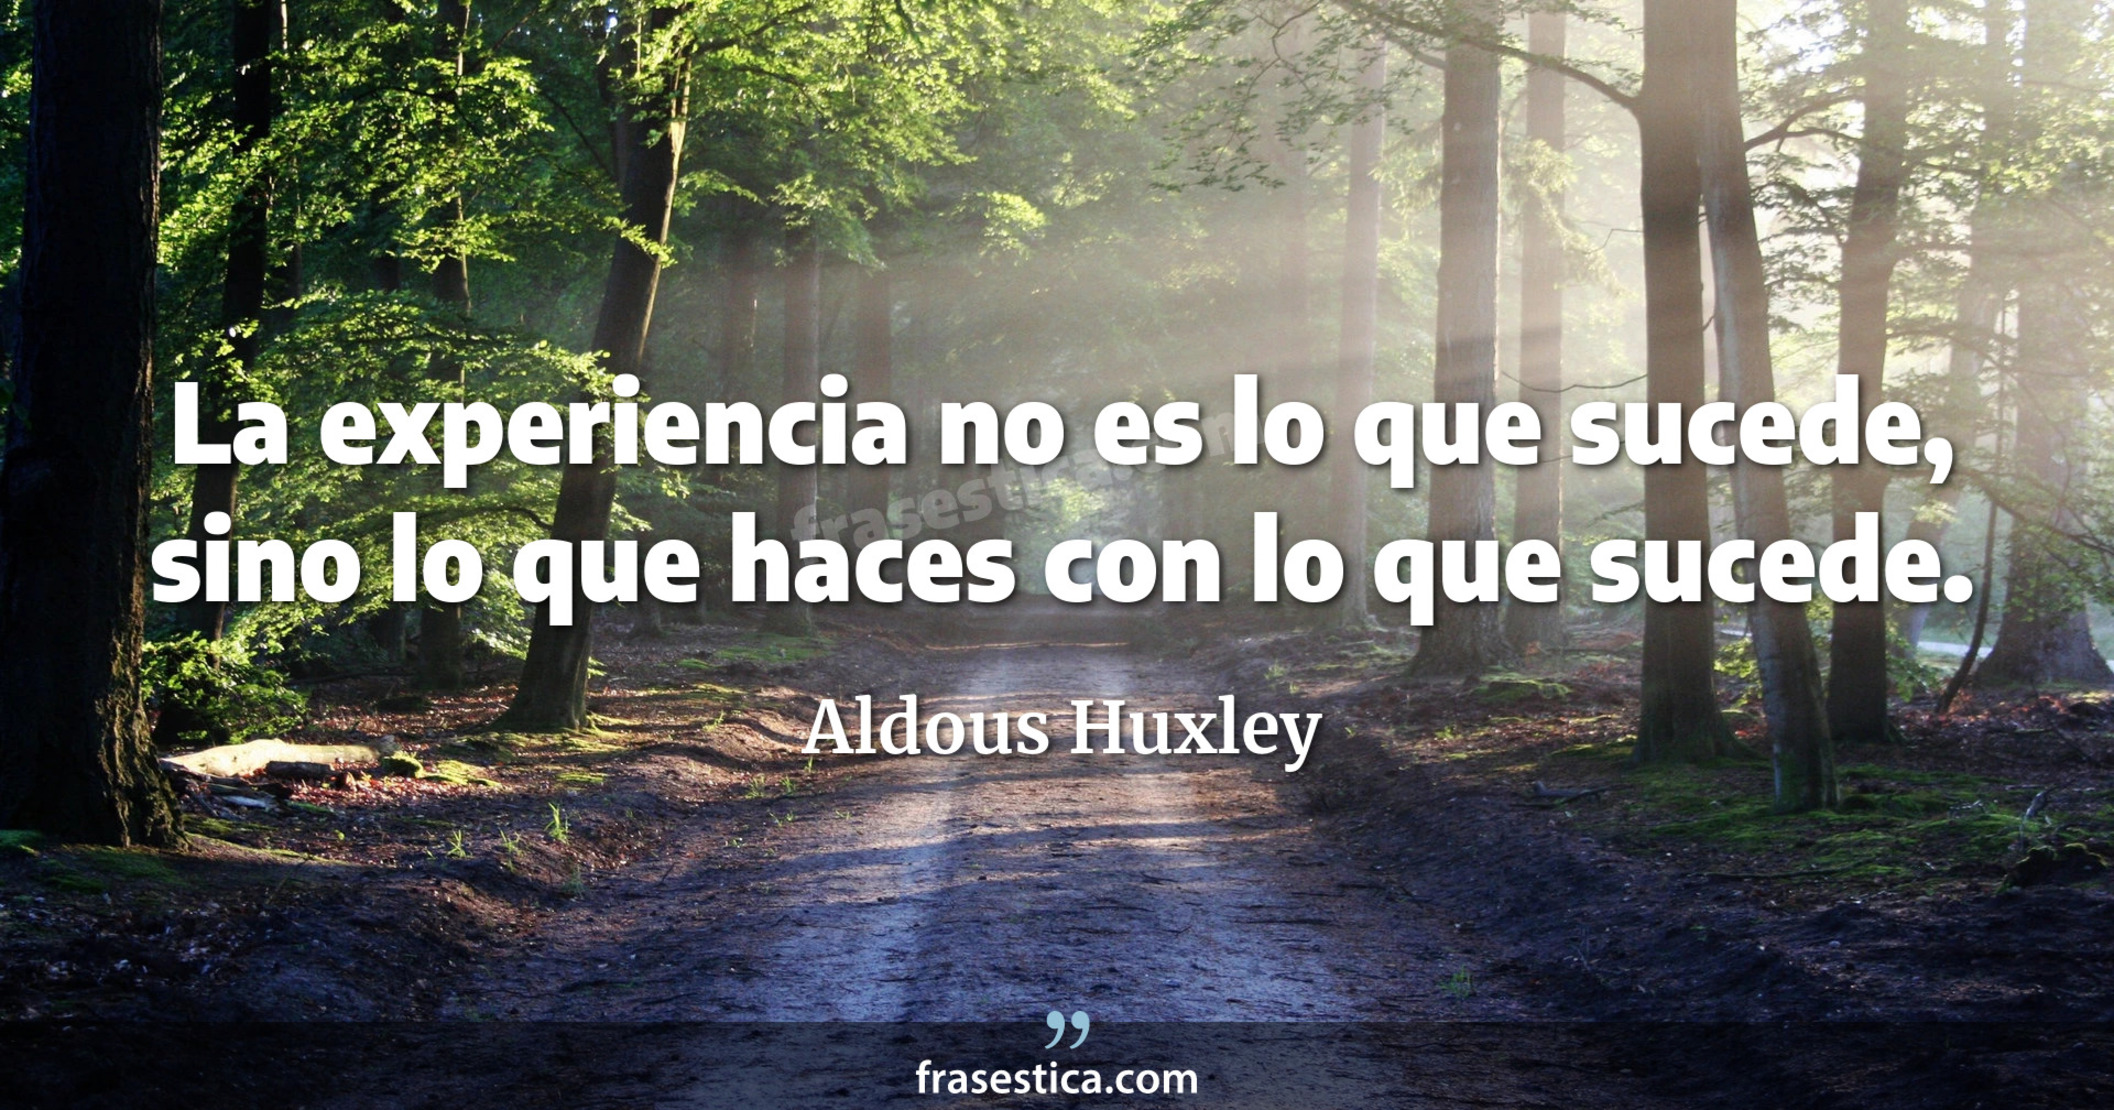 La experiencia no es lo que sucede, sino lo que haces con lo que sucede. - Aldous Huxley